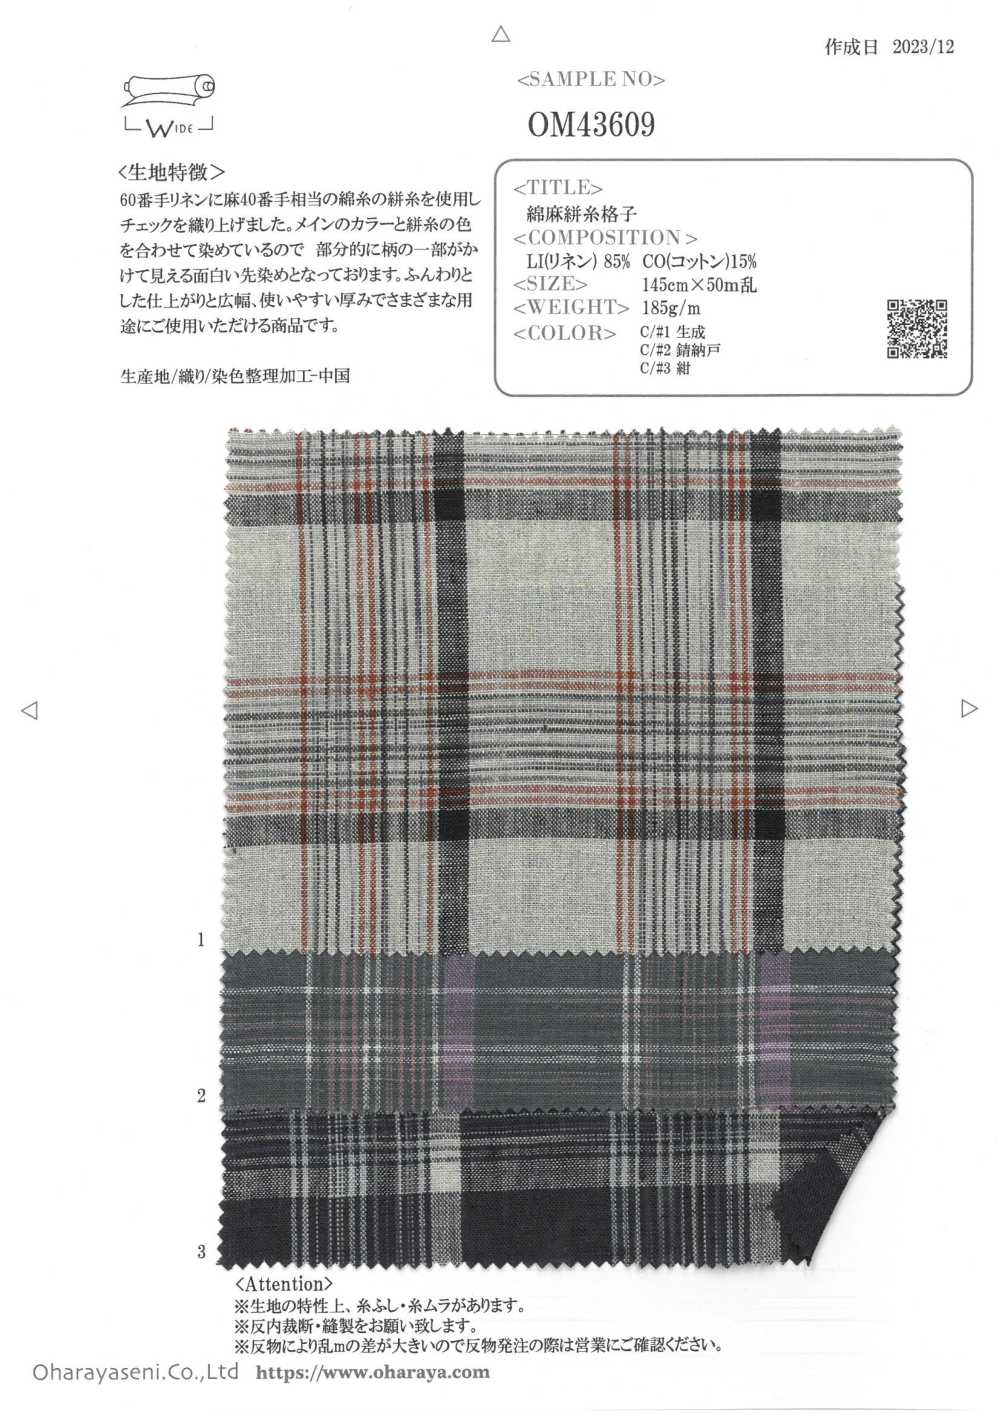 OM43609 Leinenfadengitter[Textilgewebe] Oharayaseni